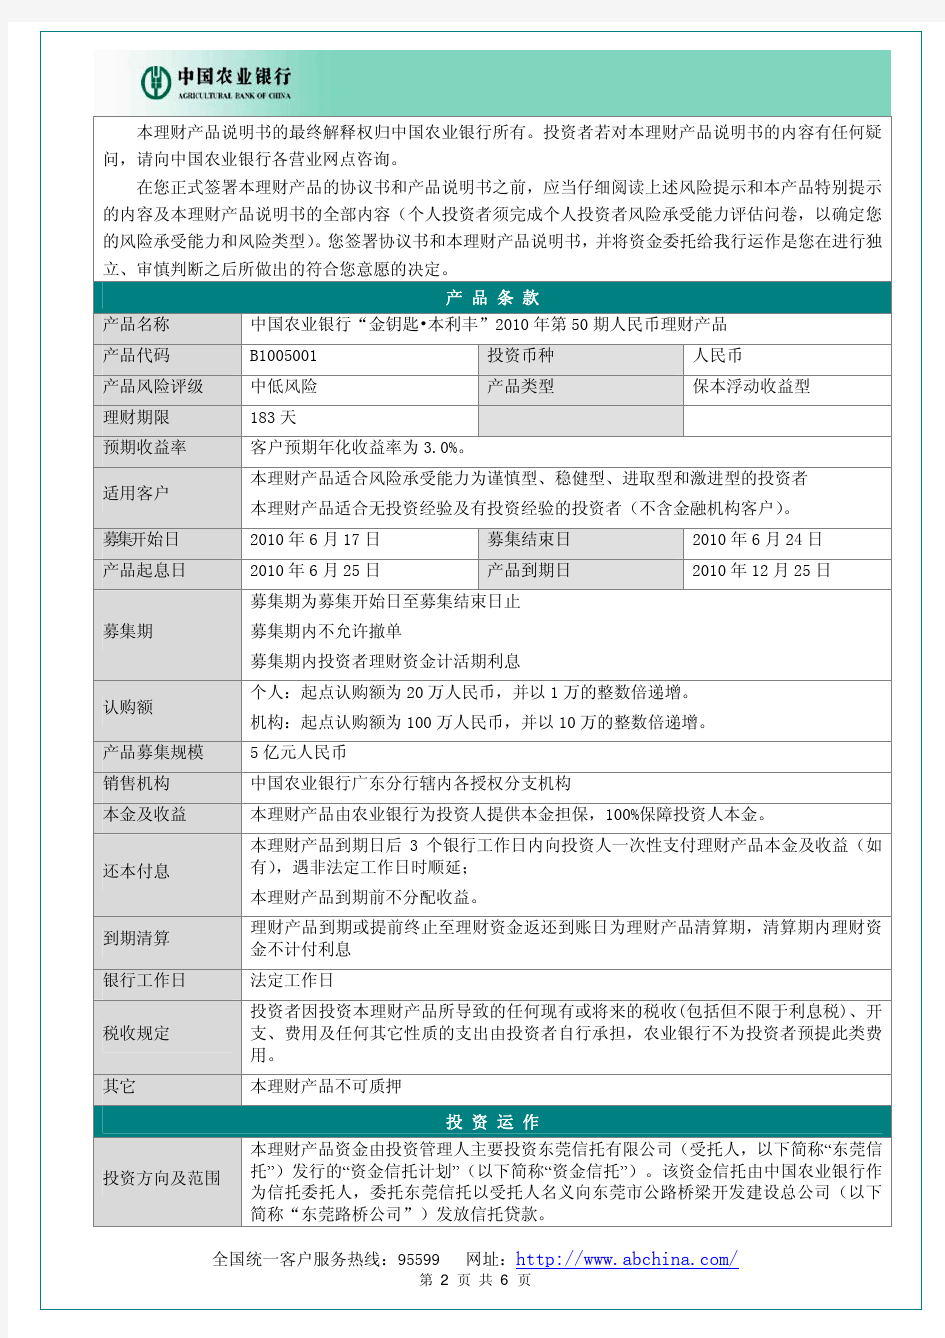 中国农业银行金钥匙本利丰2010 年第50 期人民币理财产品说明书产品